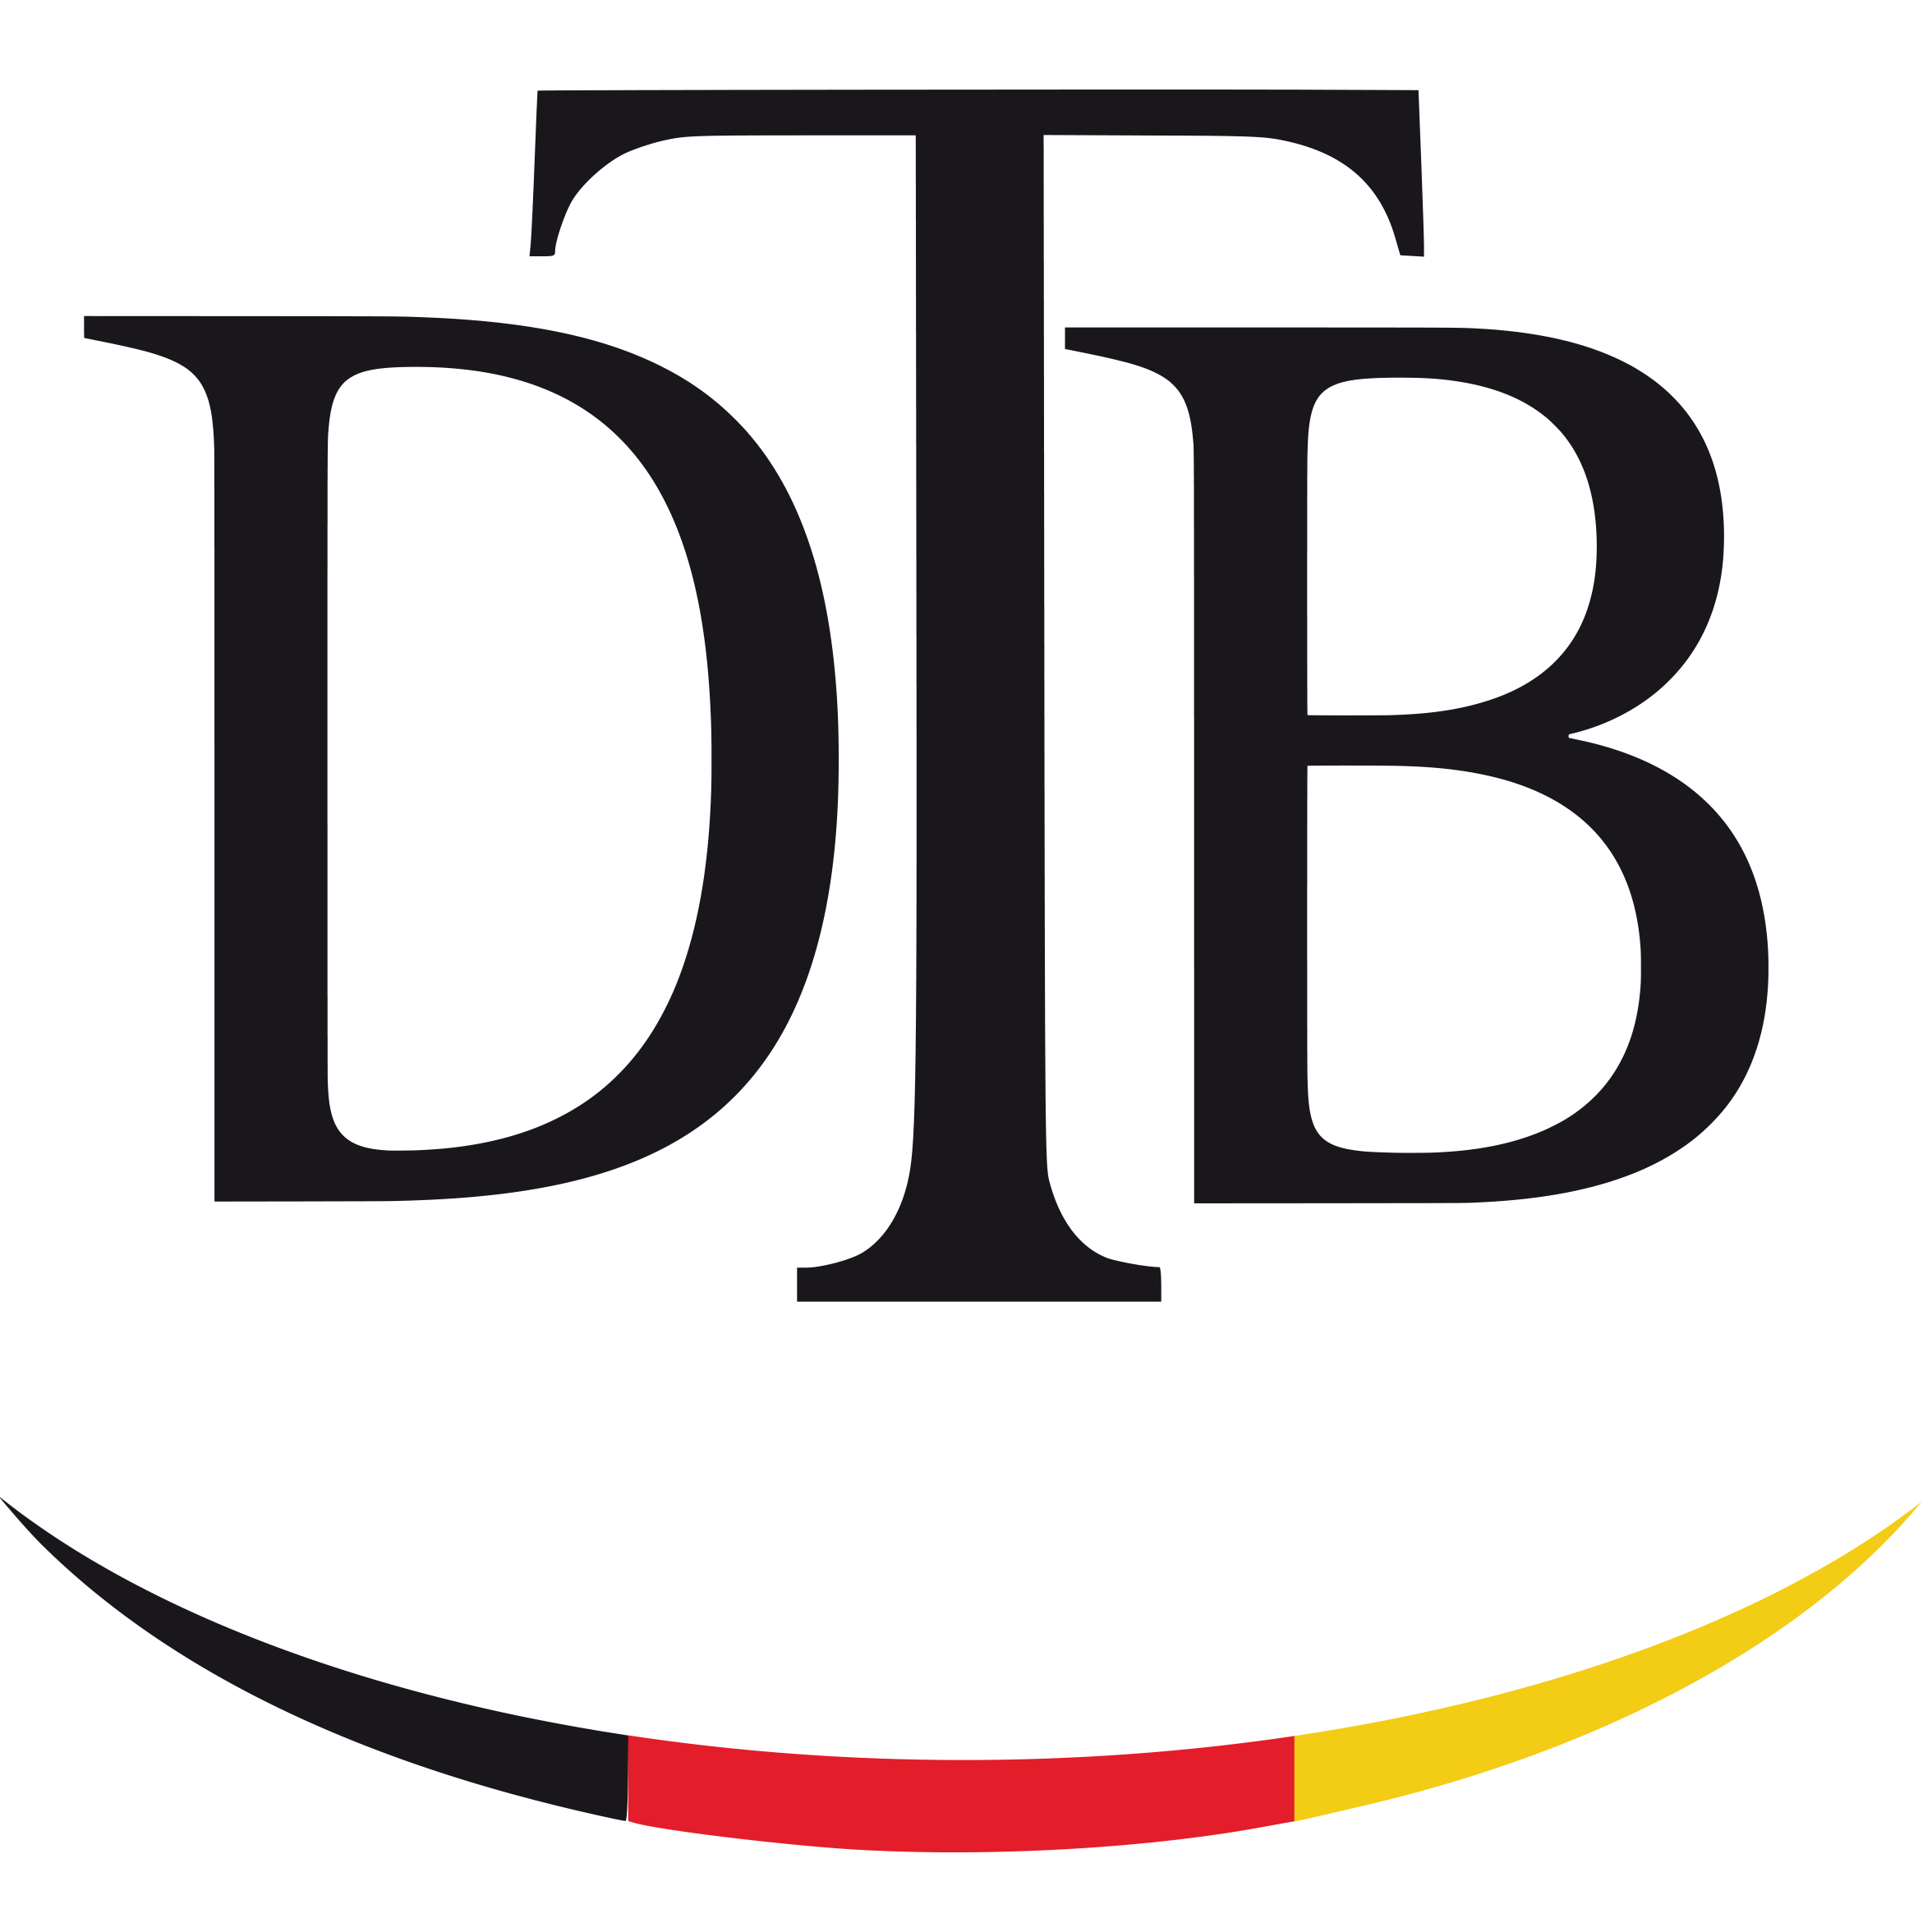 2018 dtb logo quer